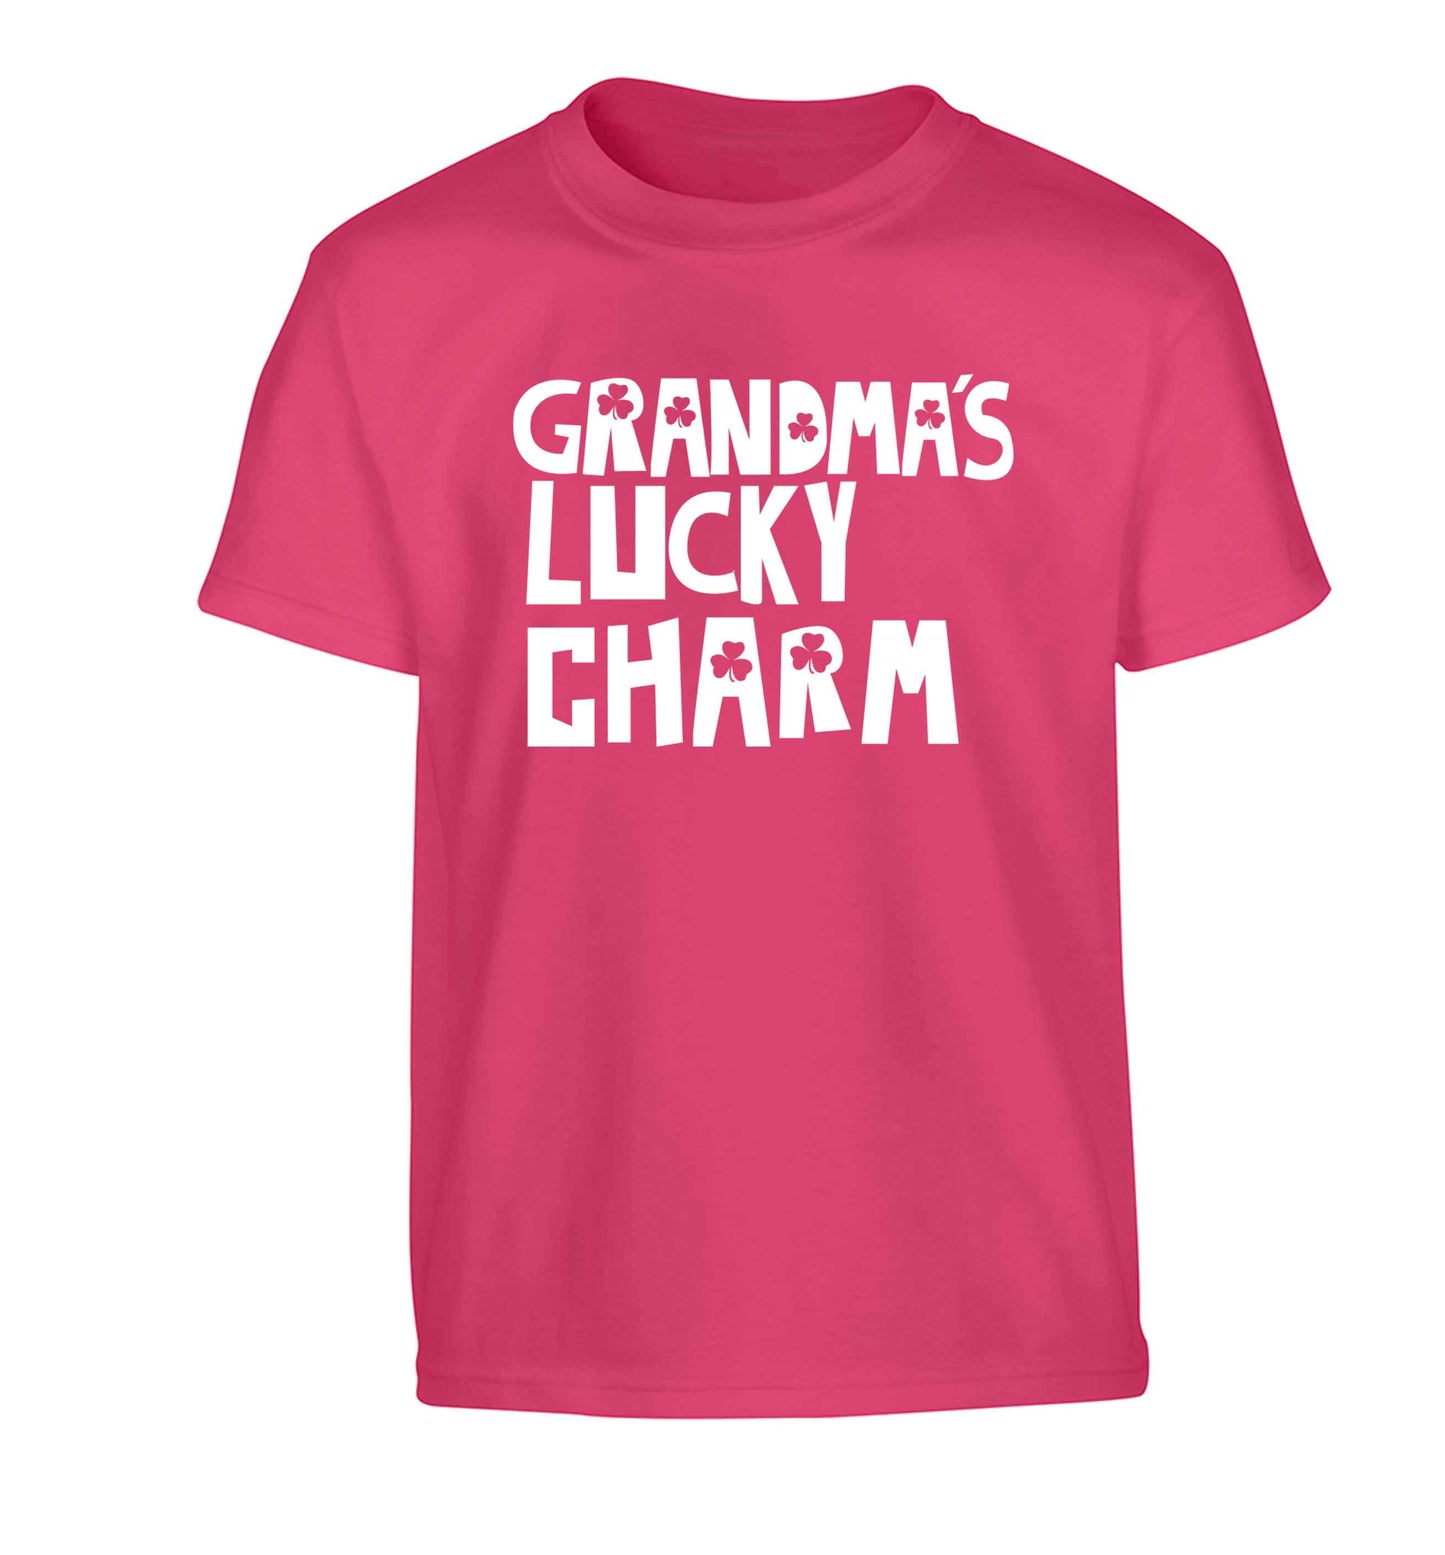 Grandma's lucky charm Children's pink Tshirt 12-13 Years